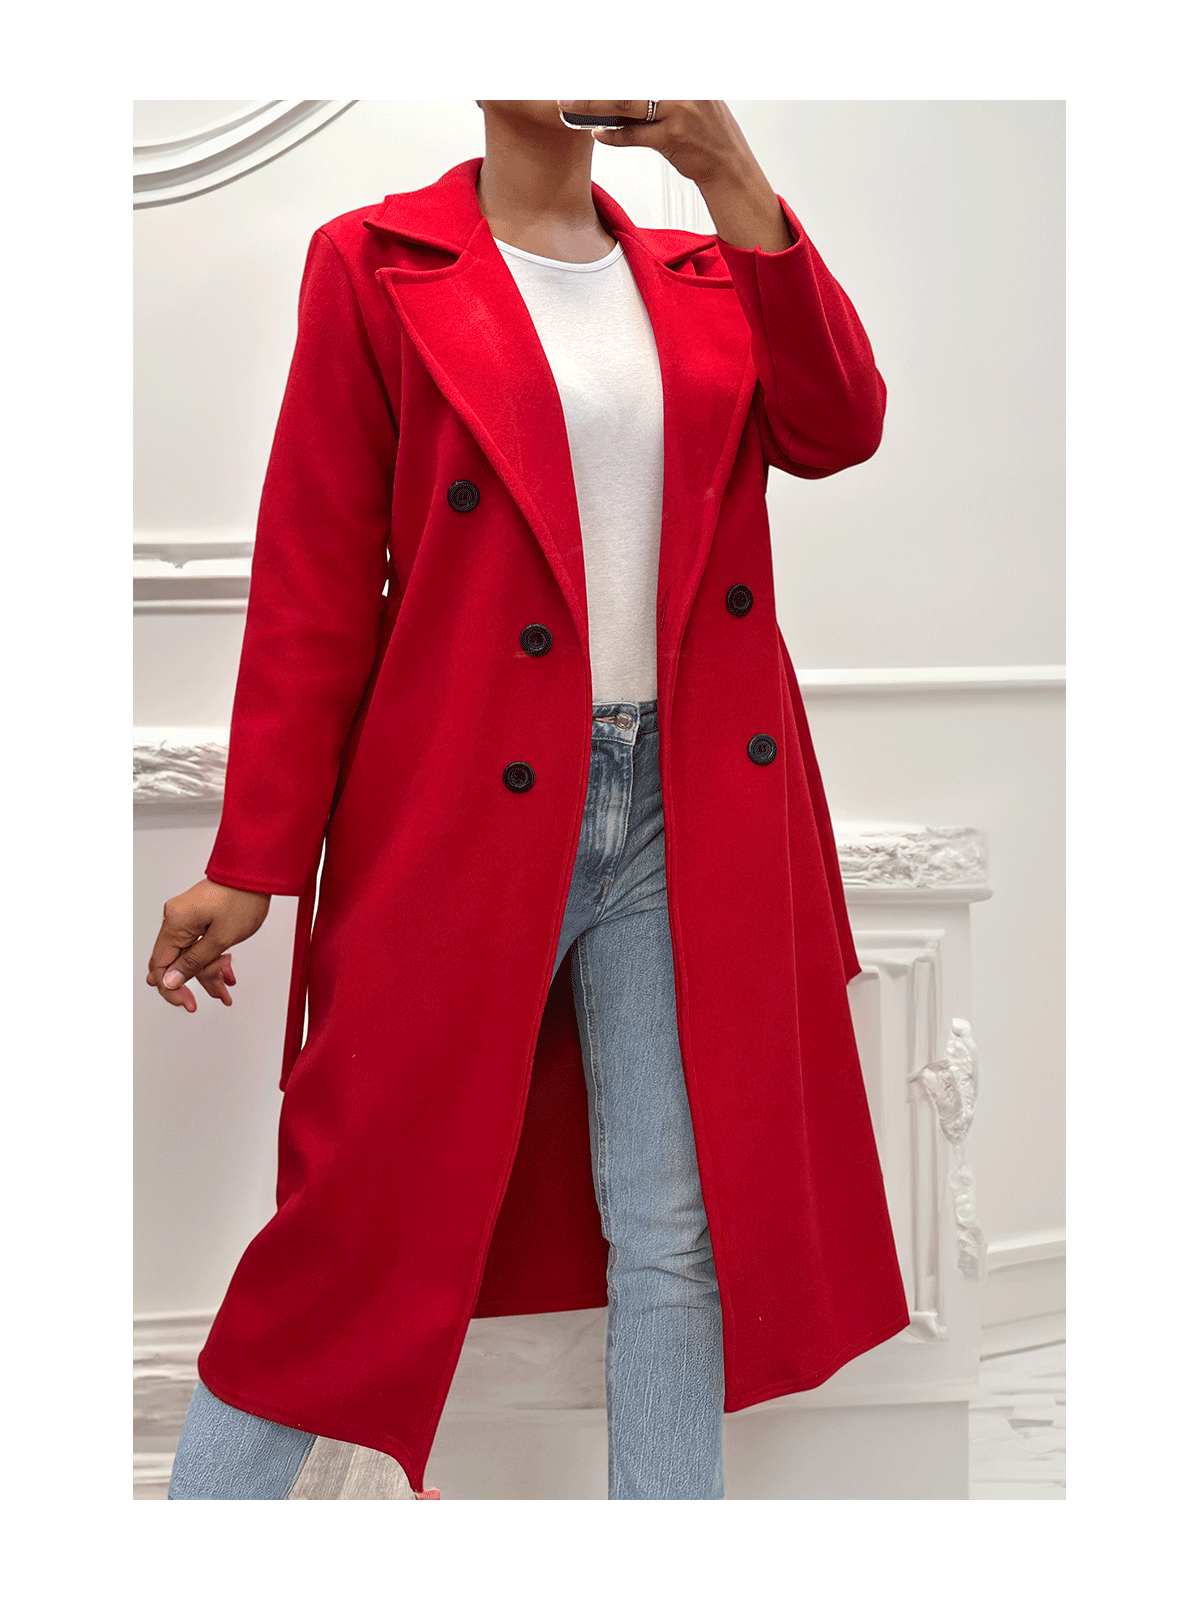 Long manteau croisé en rouge avec poches boutons et ceinture - 2